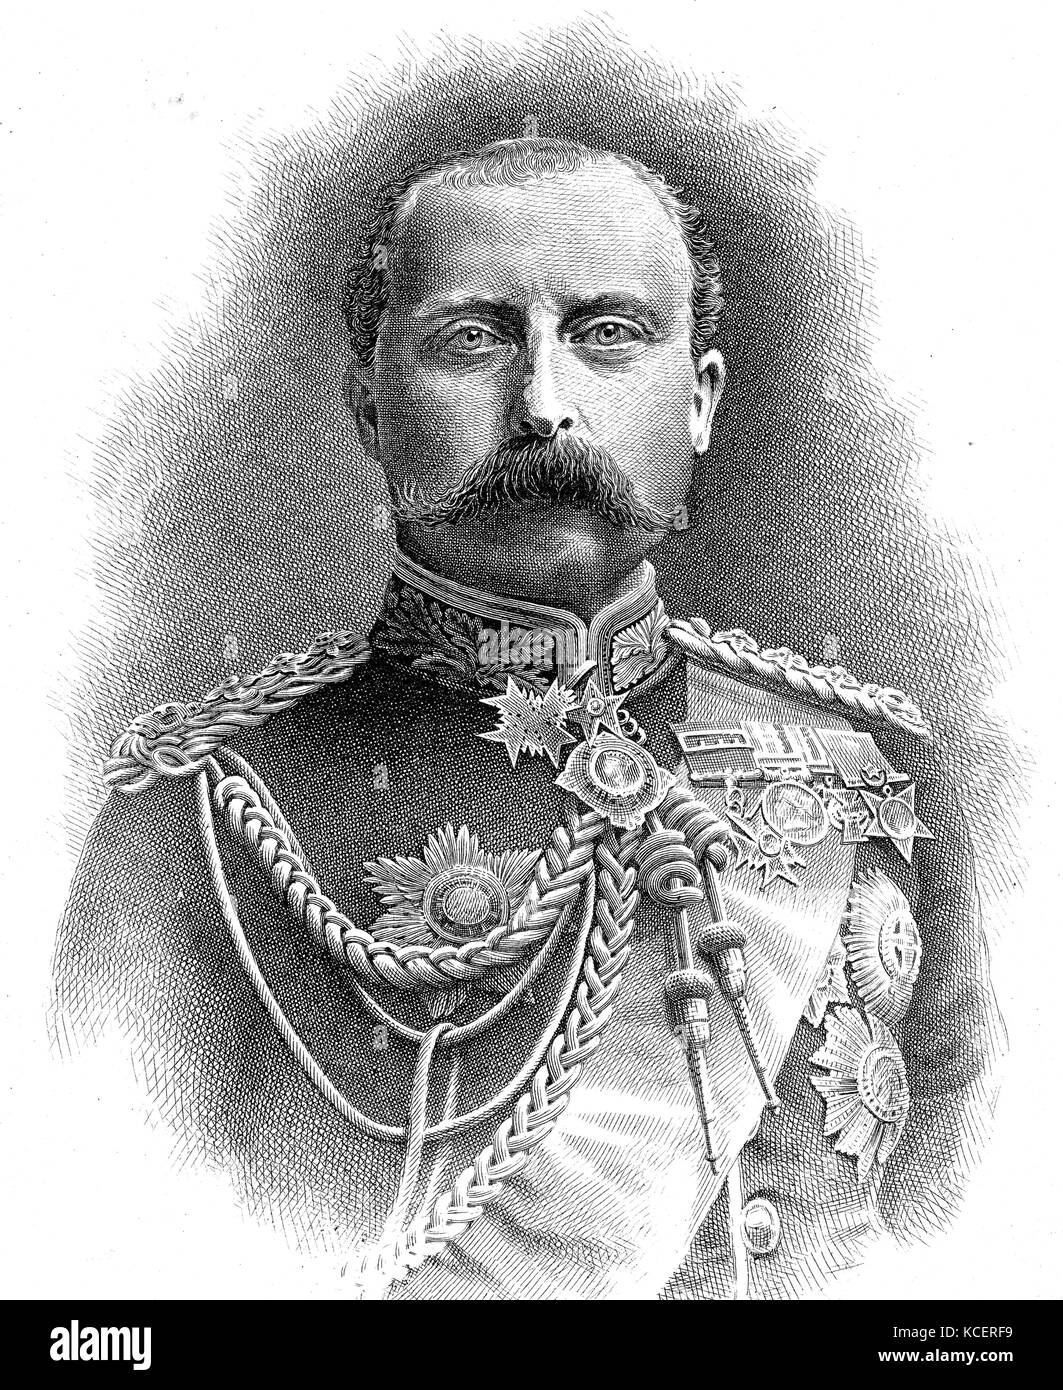 Portrait von Prinz Arthur, Herzog von Connaught und Strathearn (1850-1942) Mitglied der britischen königlichen Familie und Generalgouverneur von Kanada. Vom 19. Jahrhundert Stockfoto